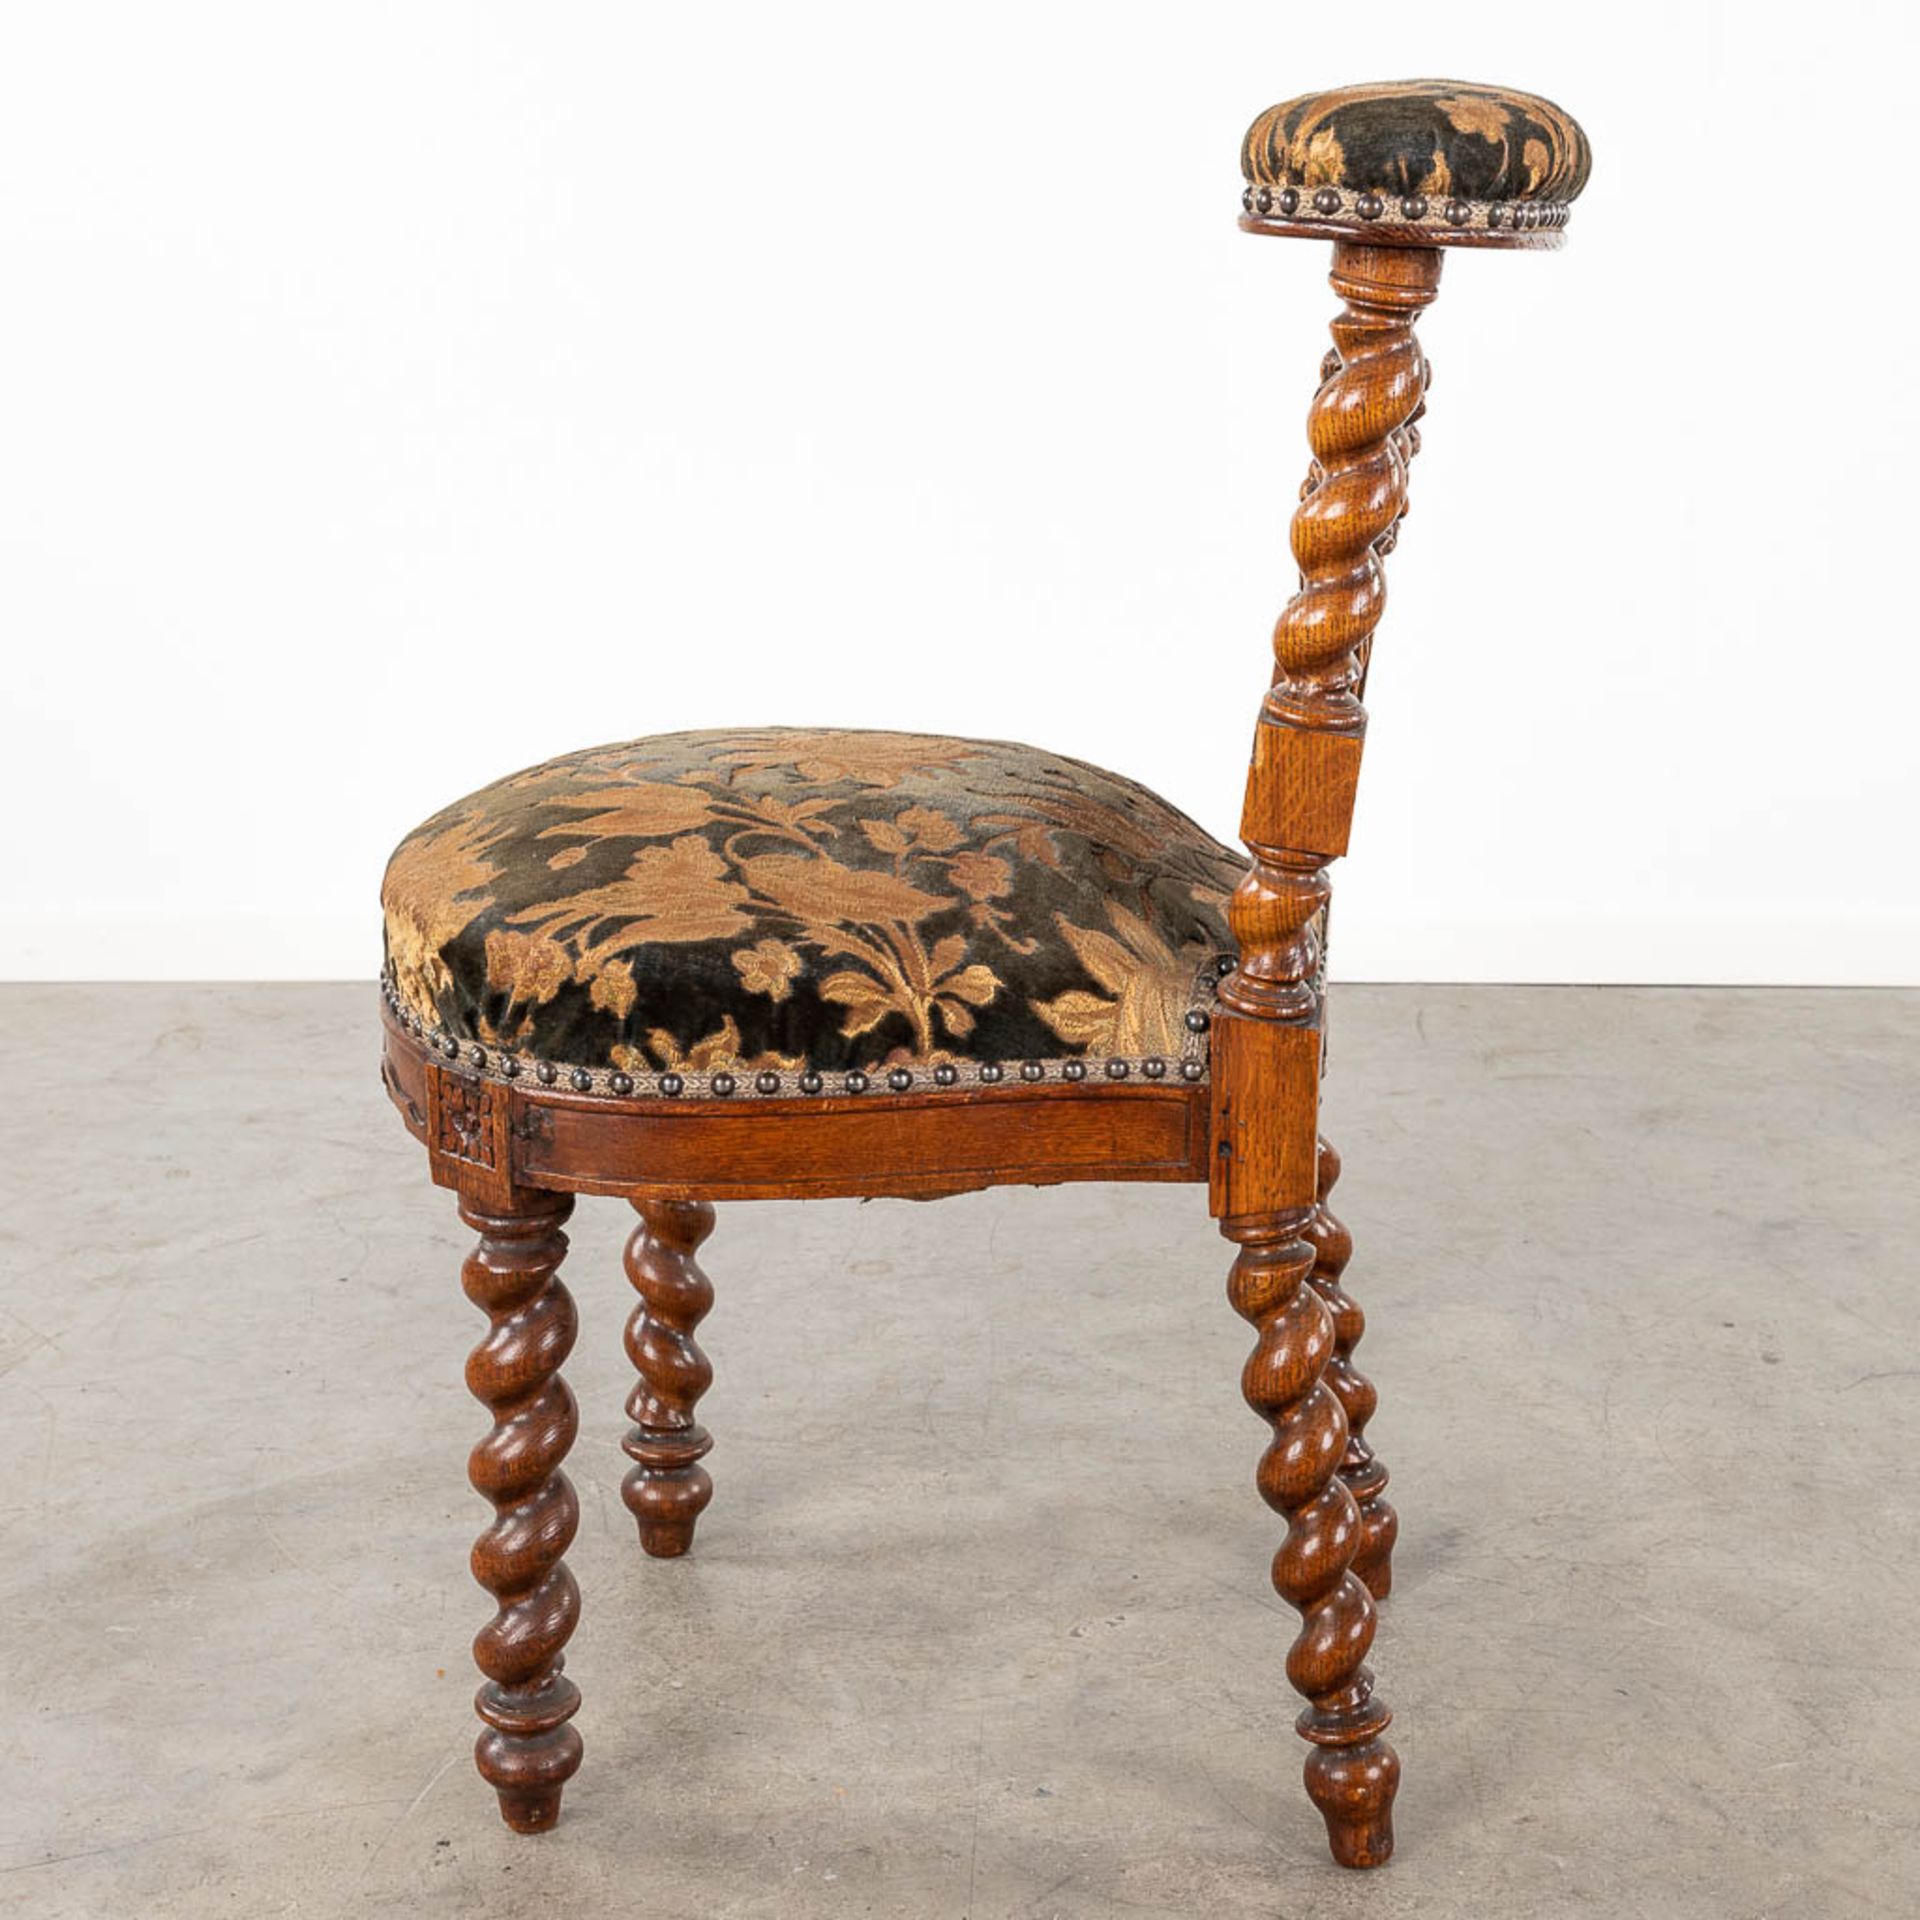 A set of 4 antique wood-sculptured smoker's chairs, oak. Circa 1900. (L:55 x W:44 x H:80 cm) - Bild 9 aus 15